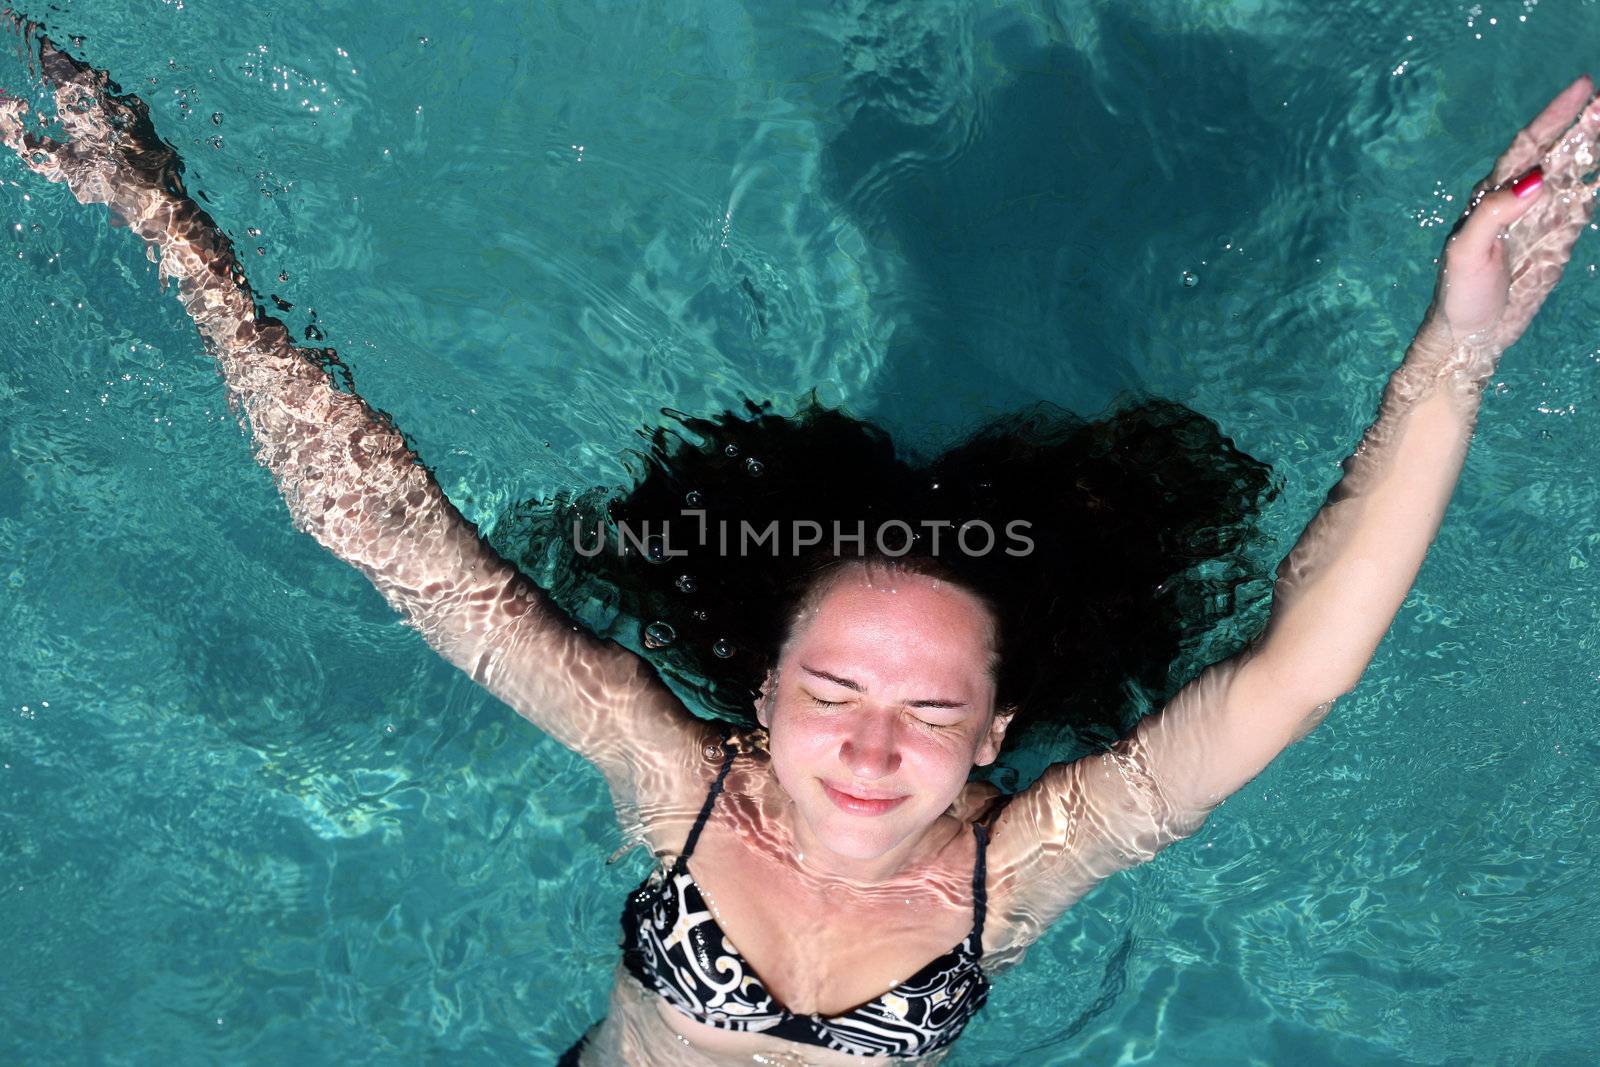 Beautiful woman enjoying summer in the pool